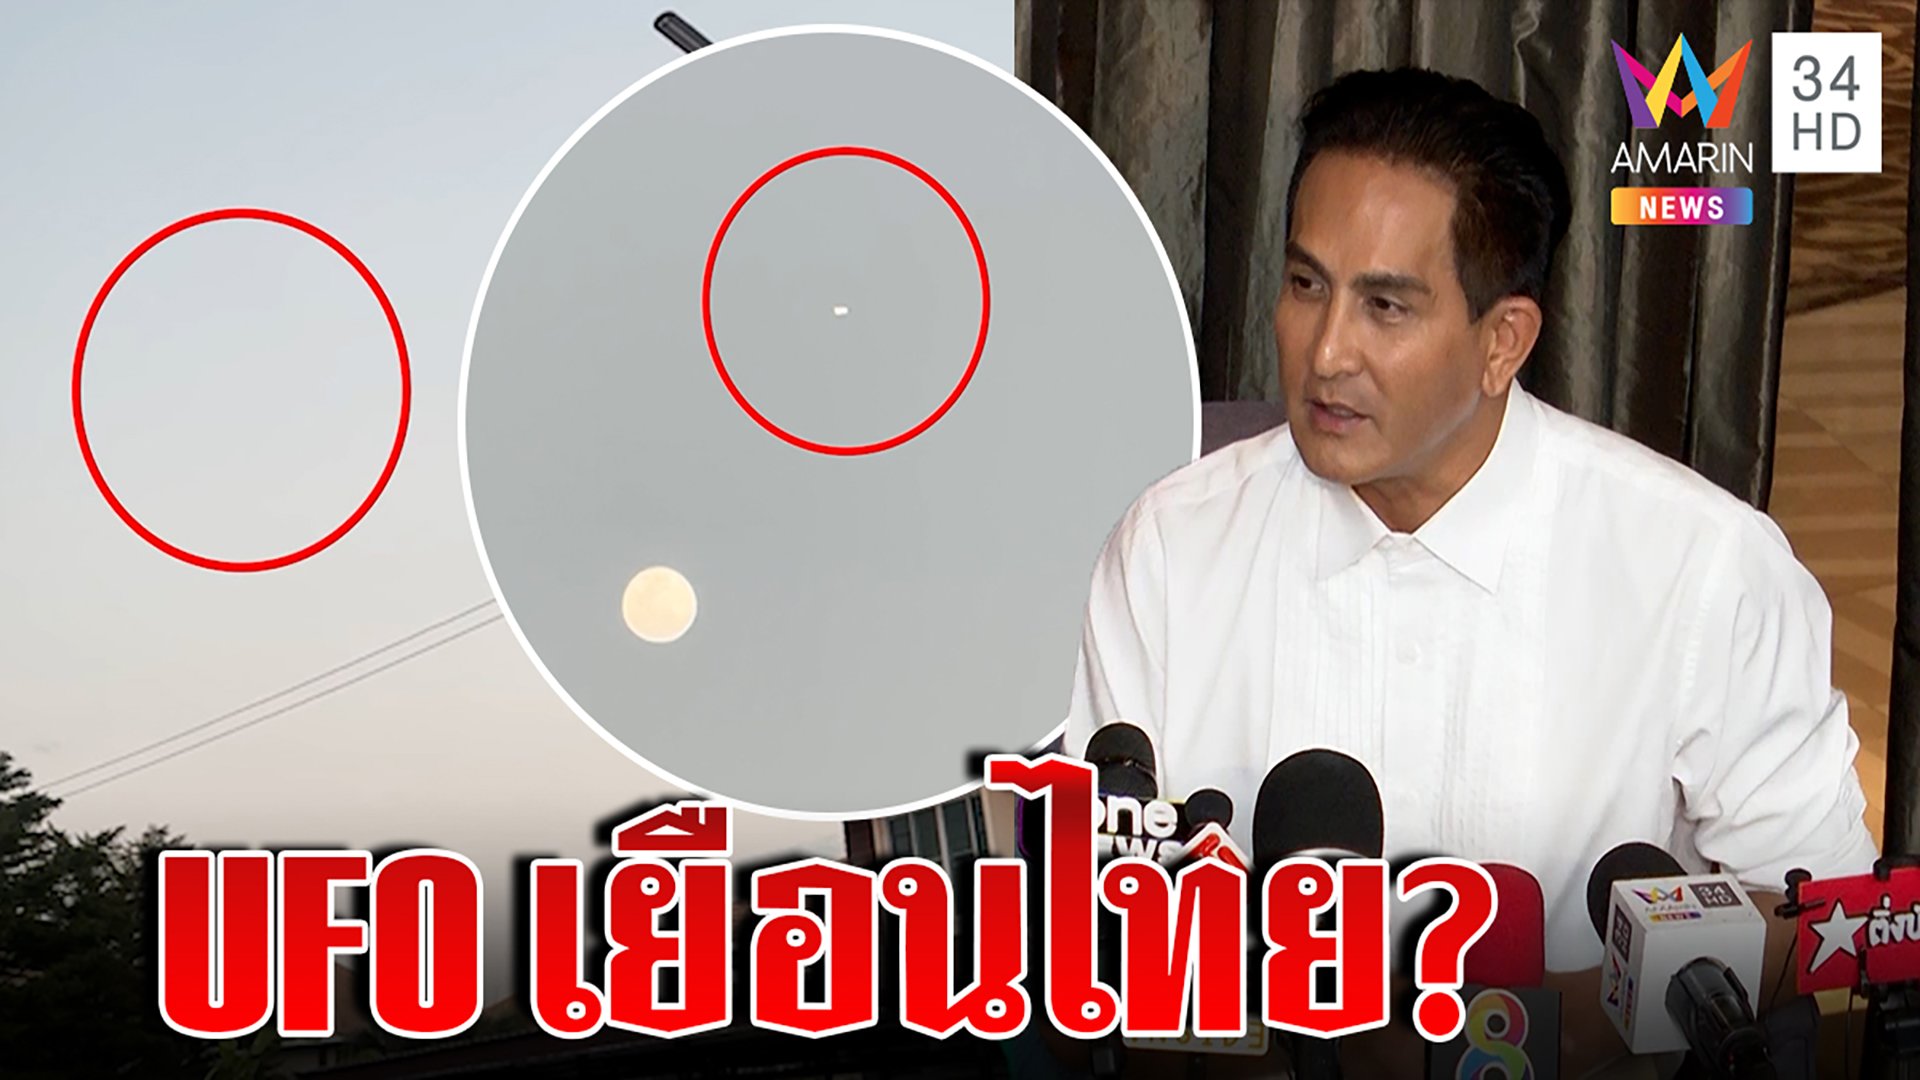 ตะลึง! UFO โผล่น่านฟ้าไทย "พีท ทองเจือ" เชื่อของจริงมีคลื่นพรางตัว | ทุบโต๊ะข่าว | 15 ก.พ. 66 | AMARIN TVHD34